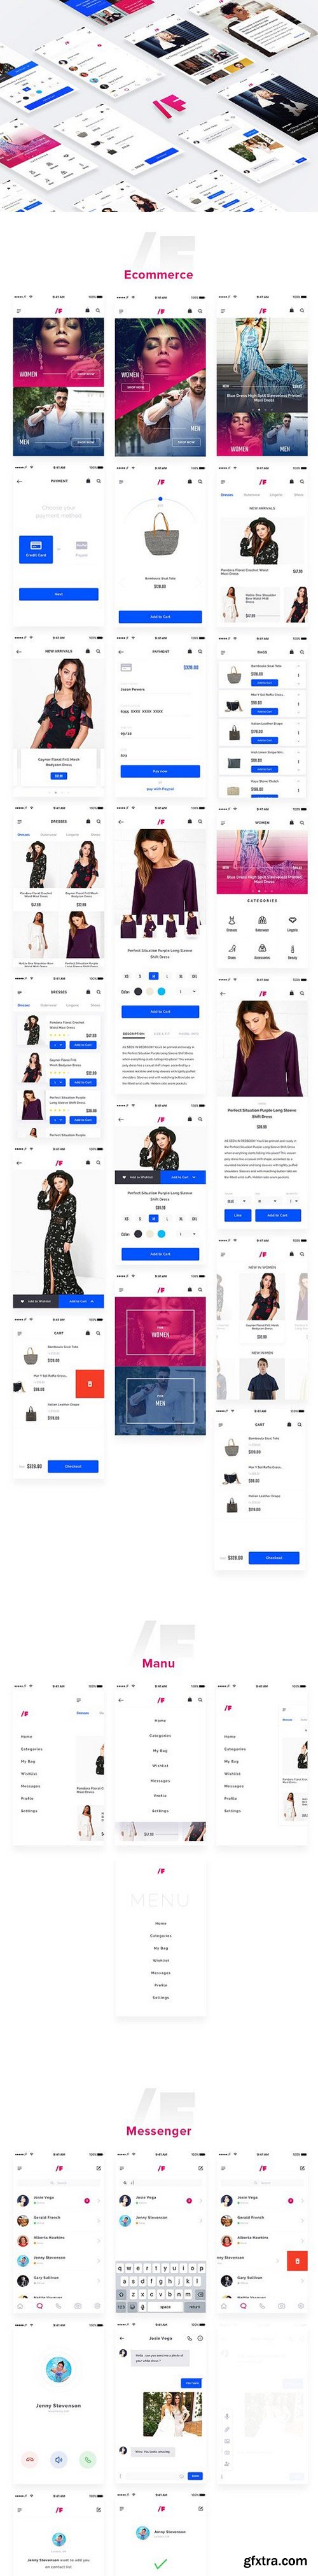 CM - Fashion App UI Kit 1518755